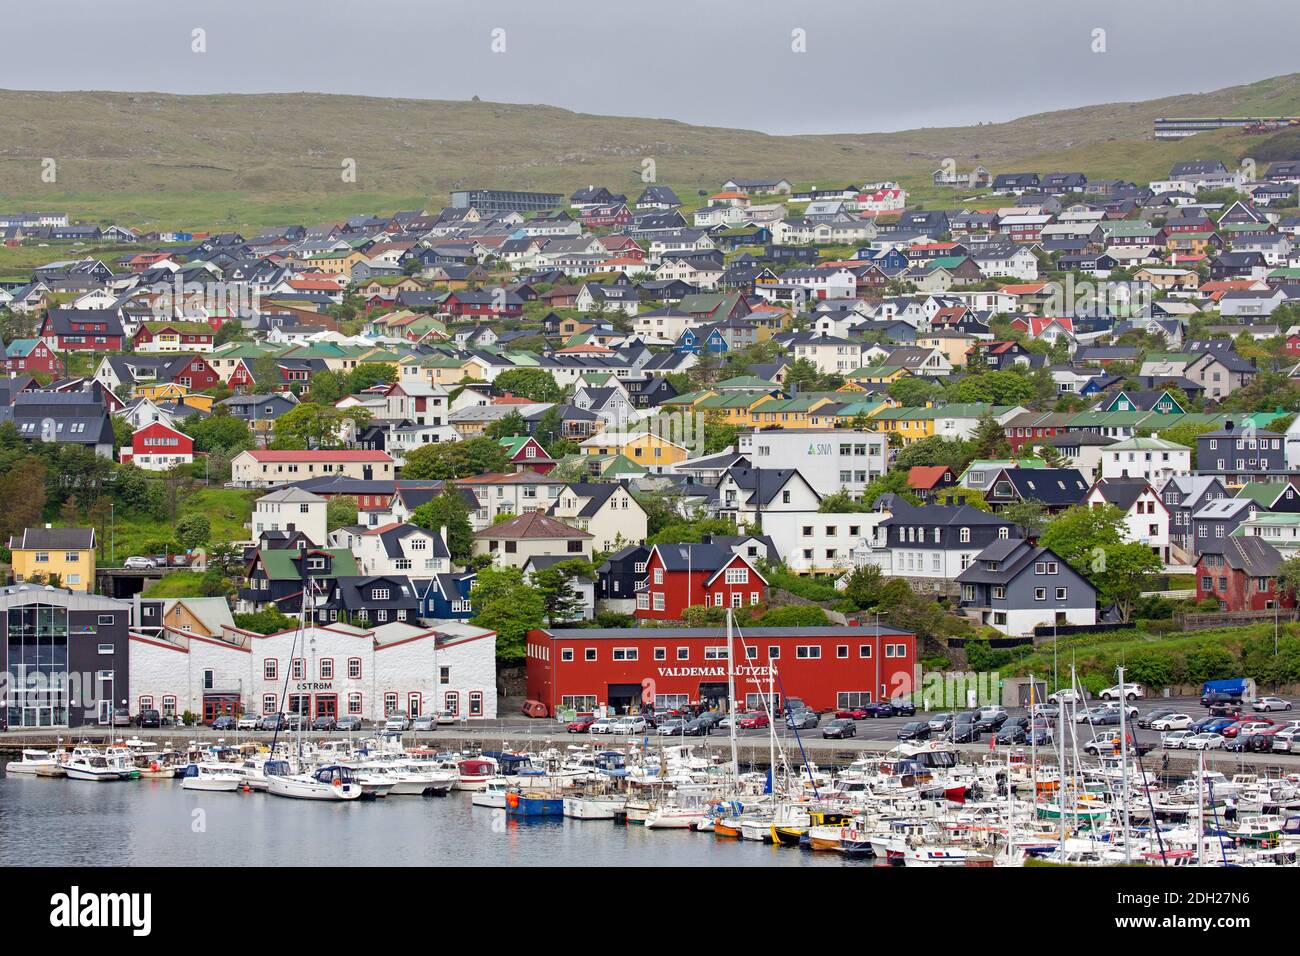 Blick über den Hafen / Yachthafen von Torshavn, Hauptstadt und größte Stadt der Färöer-Inseln / Färöer-Inseln auf der Insel Streymoy Stockfoto